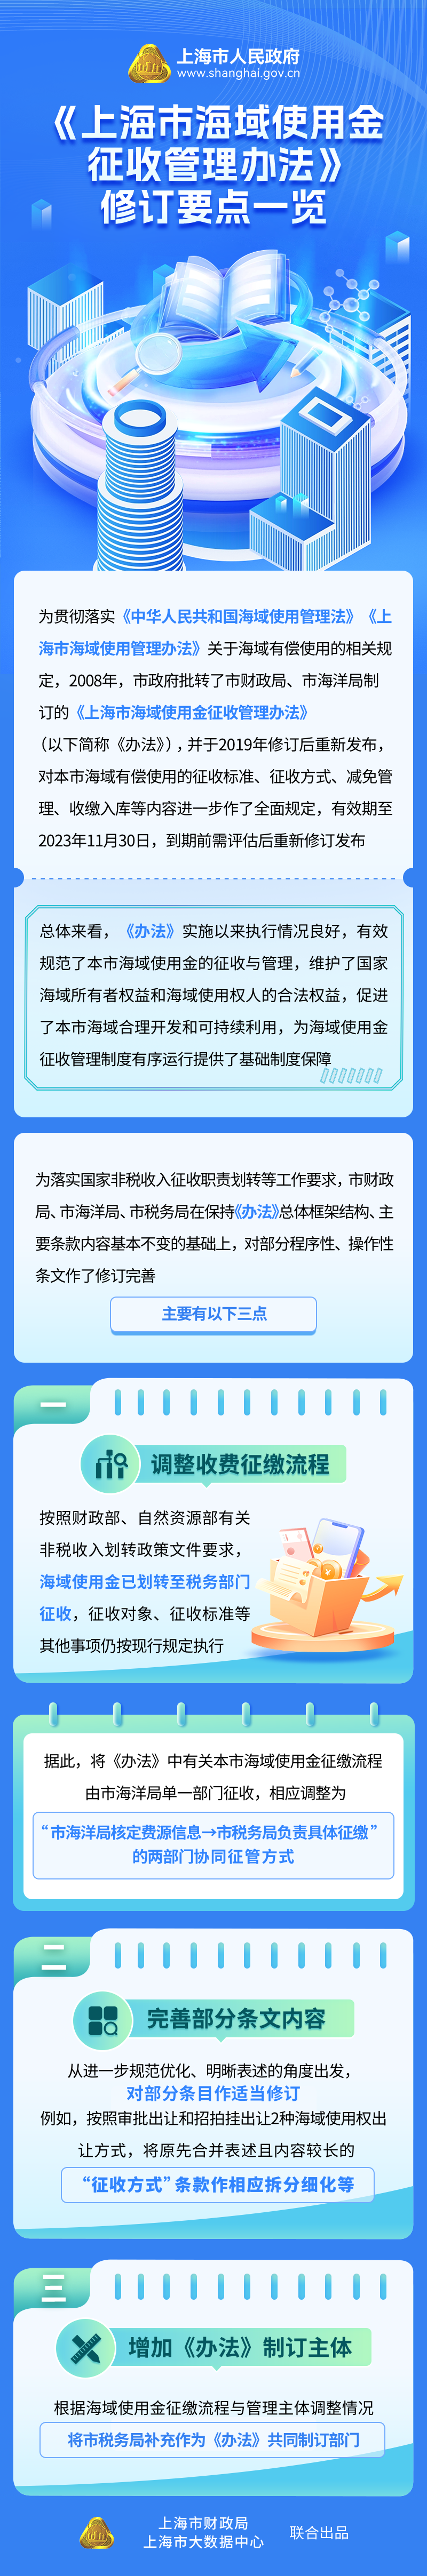 《上海市海域使用金征收管理办法》修订要点一览.jpg